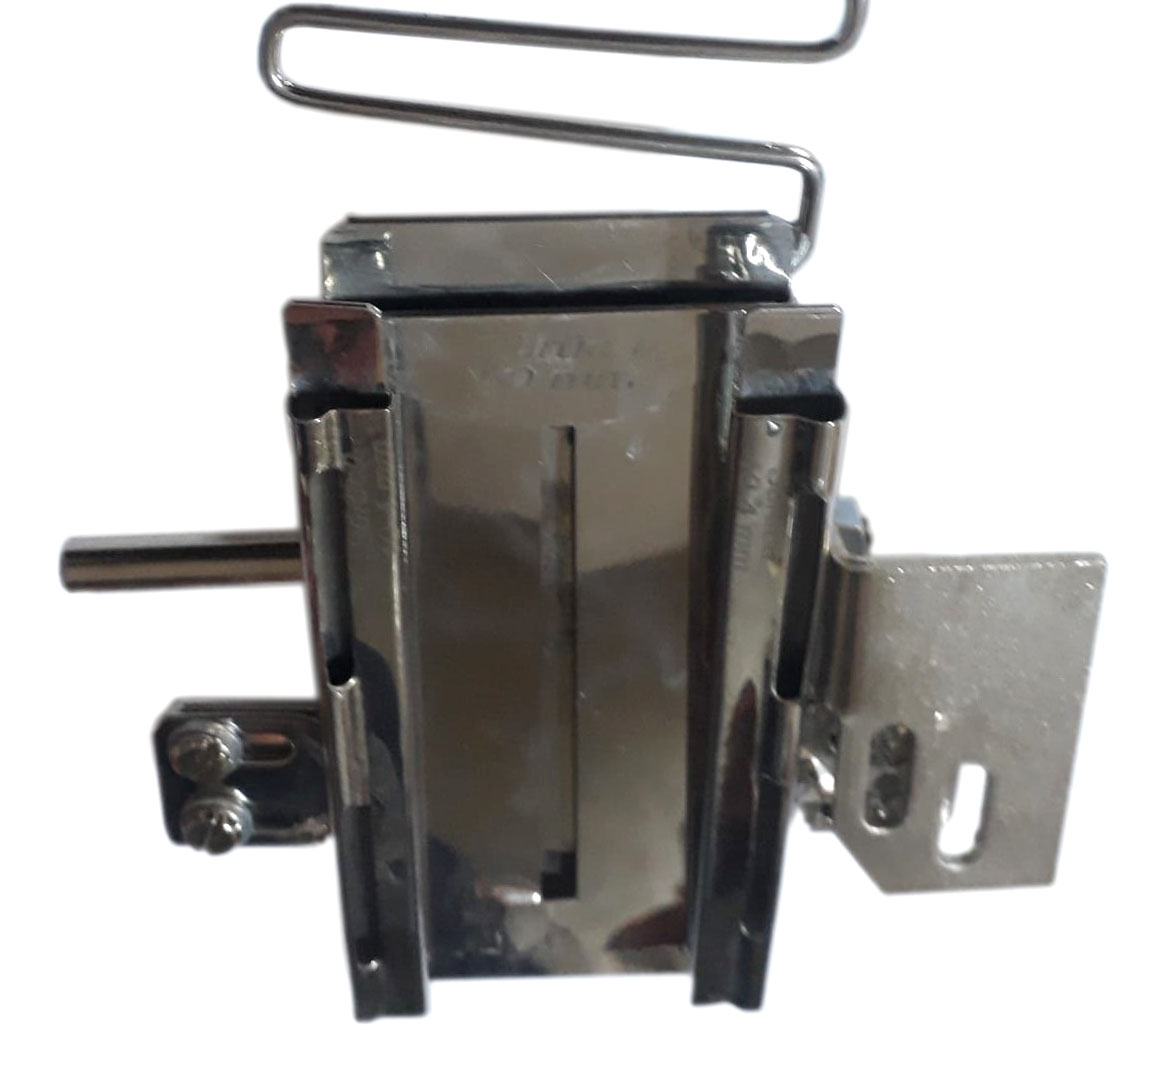 Двухигольная швейная машина для притачивания ленты СВО с двухсторонним кантом AURORA A-872-BHK-P 3